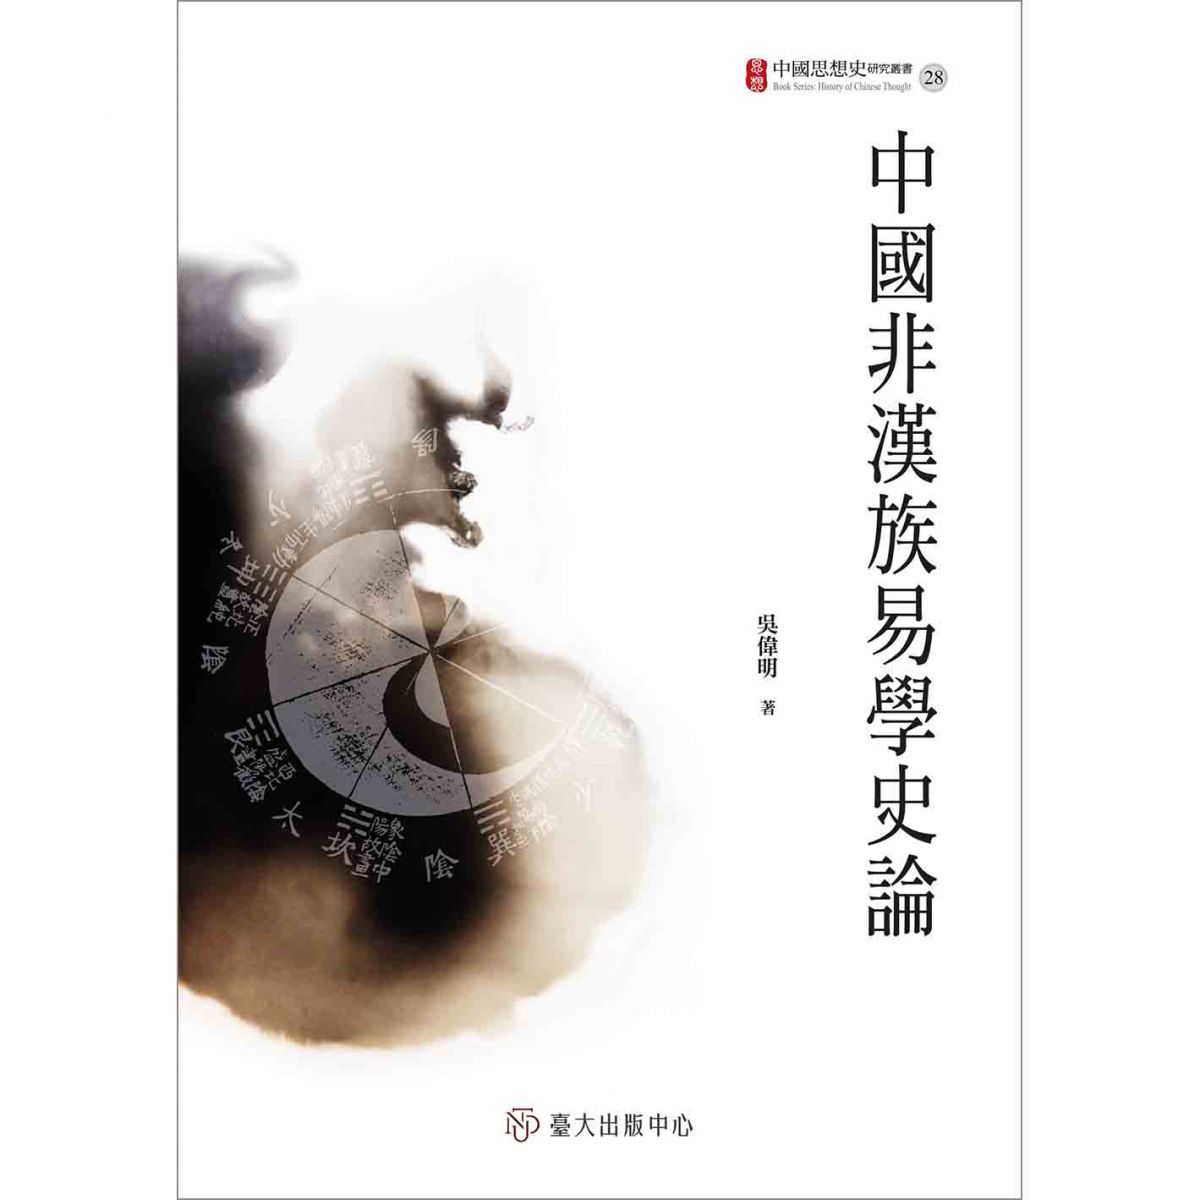 《中國非漢族易學史論》介紹中國周邊及境內的非漢族群對易學的認識與應用